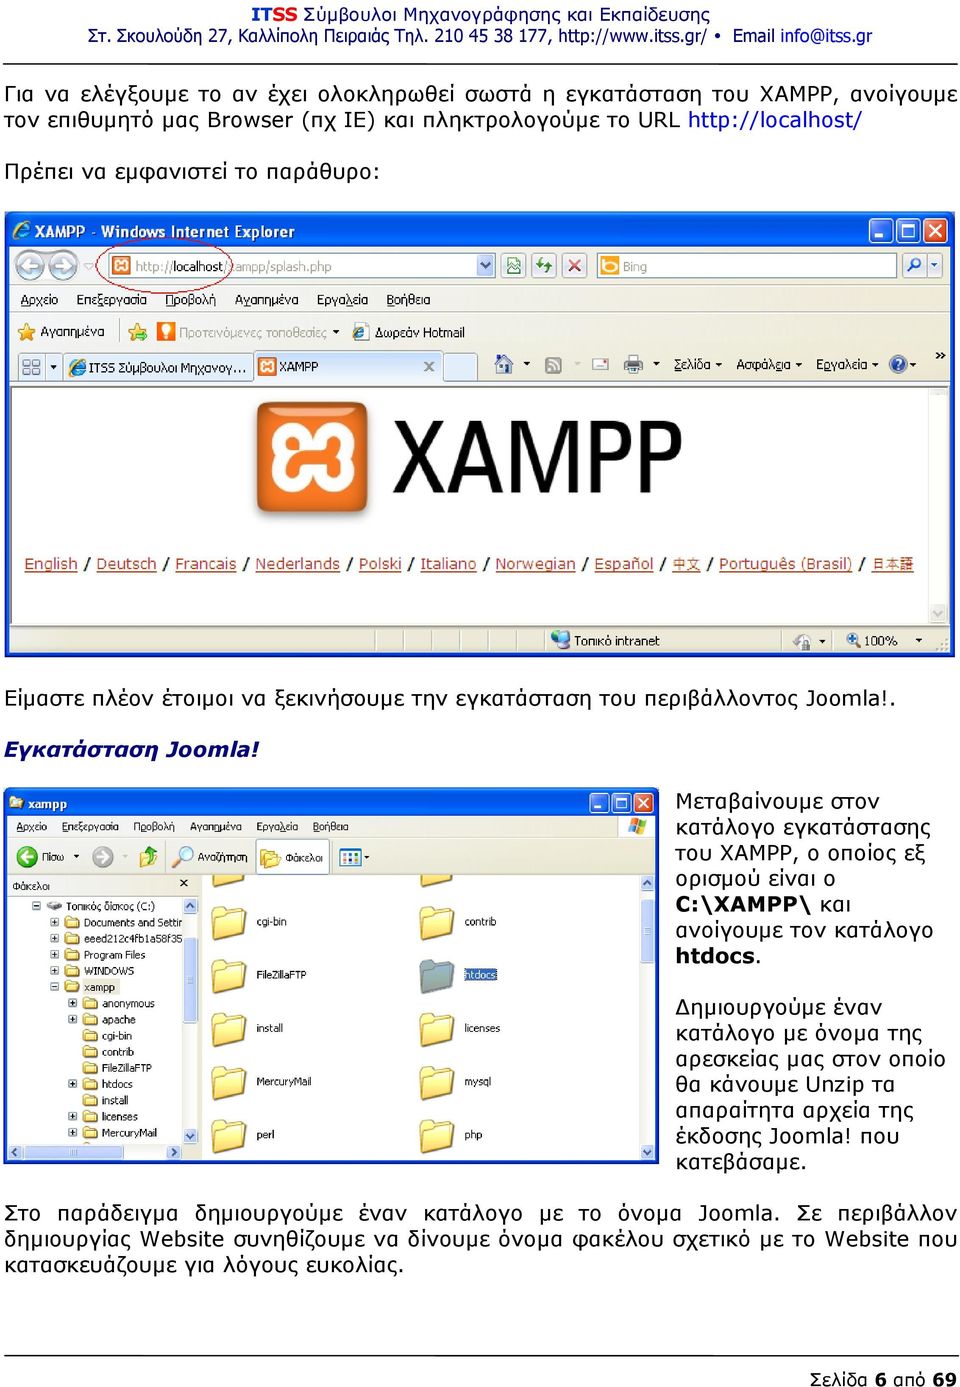 Μεταβαίνουμε στον κατάλογο εγκατάστασης του XAMPP, ο οποίος εξ ορισμού είναι ο C:\XAMPP\ και ανοίγουμε τον κατάλογο htdocs.